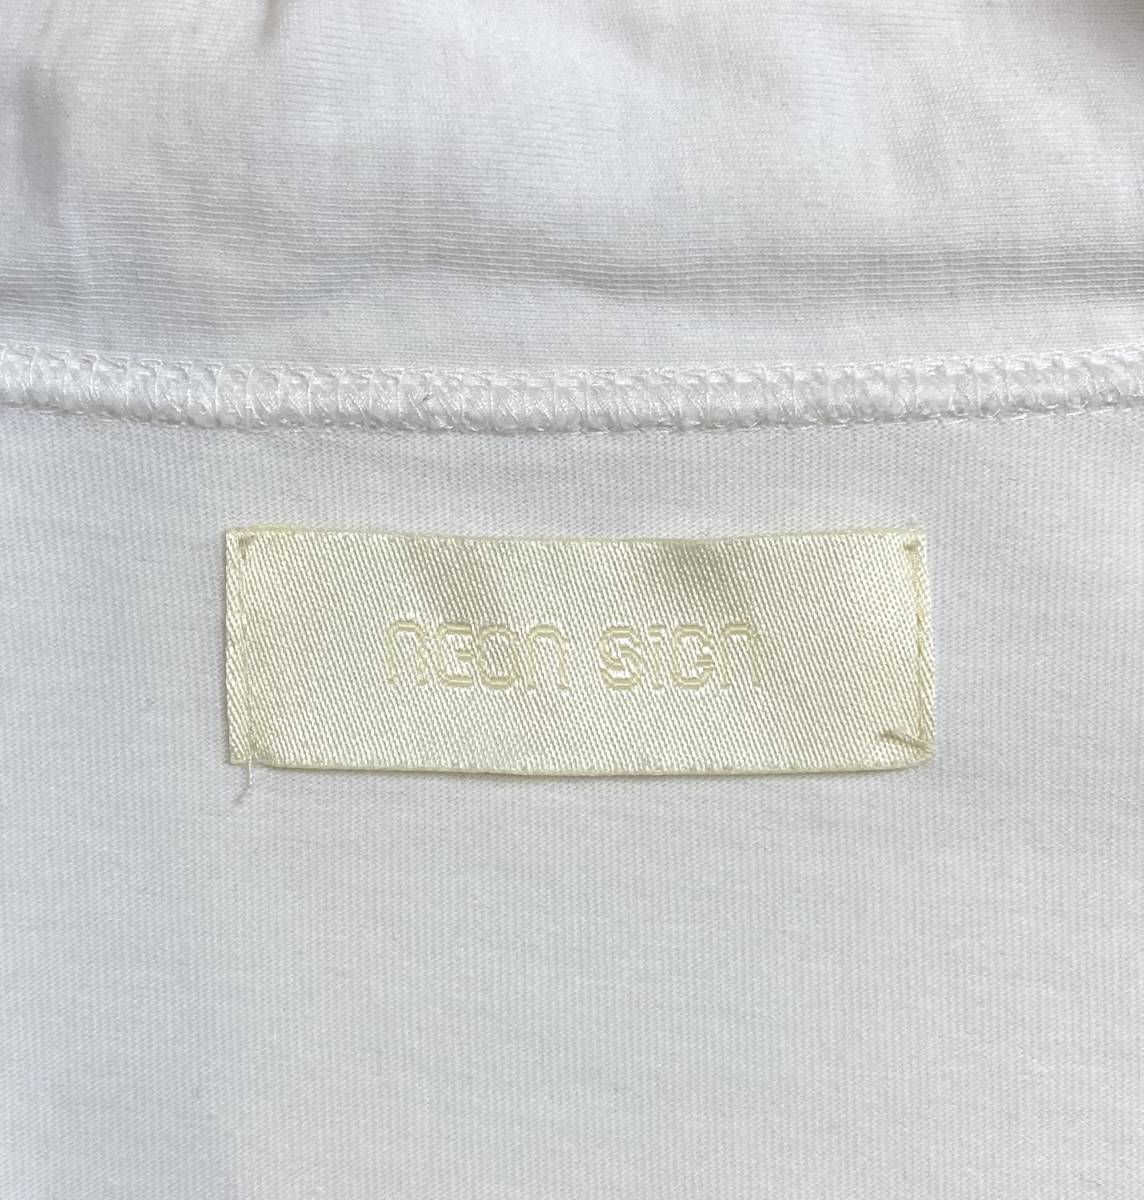 NEON SIGN ANORAK SWEAT ネオンサイン アノラックスウェット 薄手 44 日本製 長袖 Tシャツ カットソー ジャケットの画像4